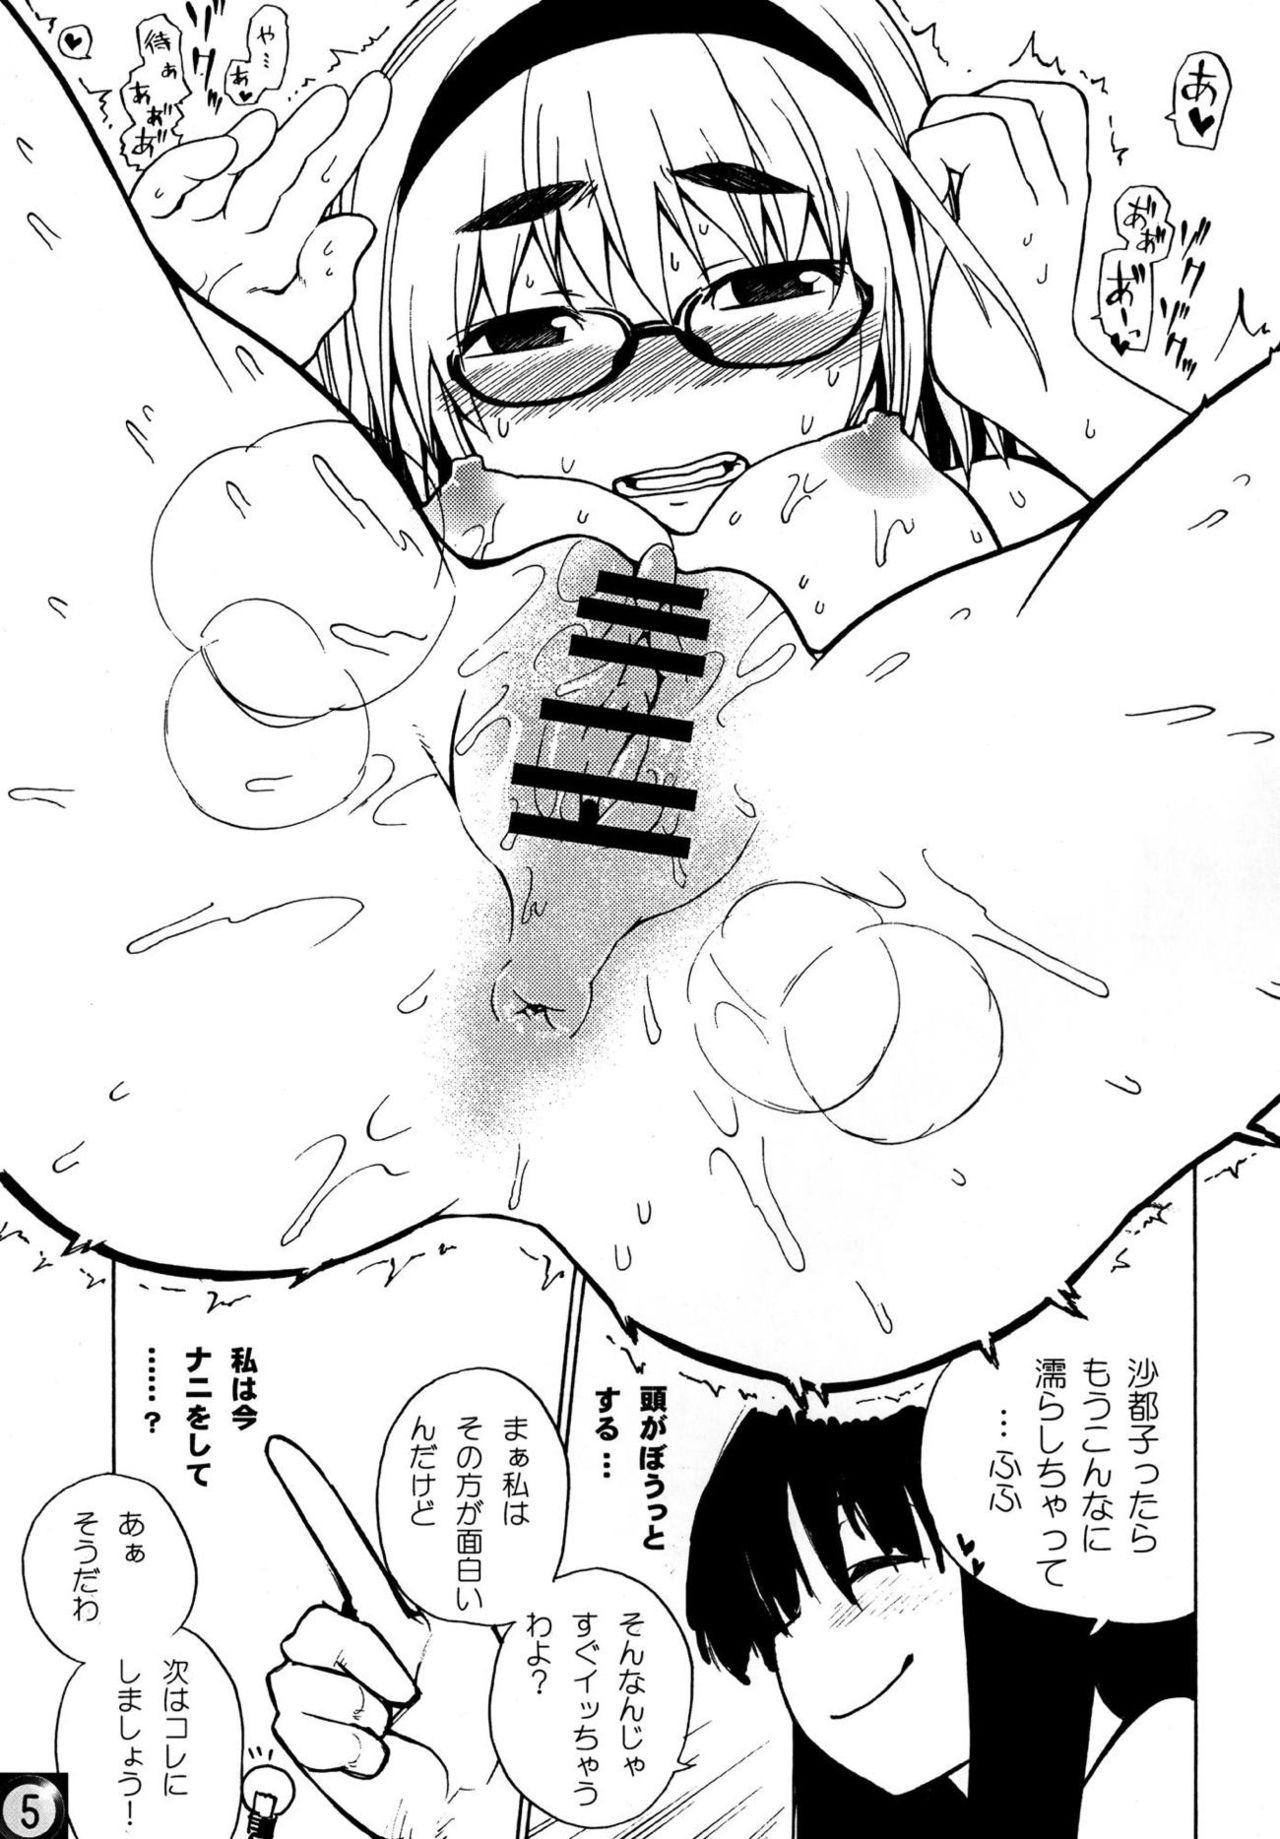 Hot Mom Ecchi ja Nai to Ikenai to Omoimasu!! - Higurashi no naku koro ni Tan - Page 4